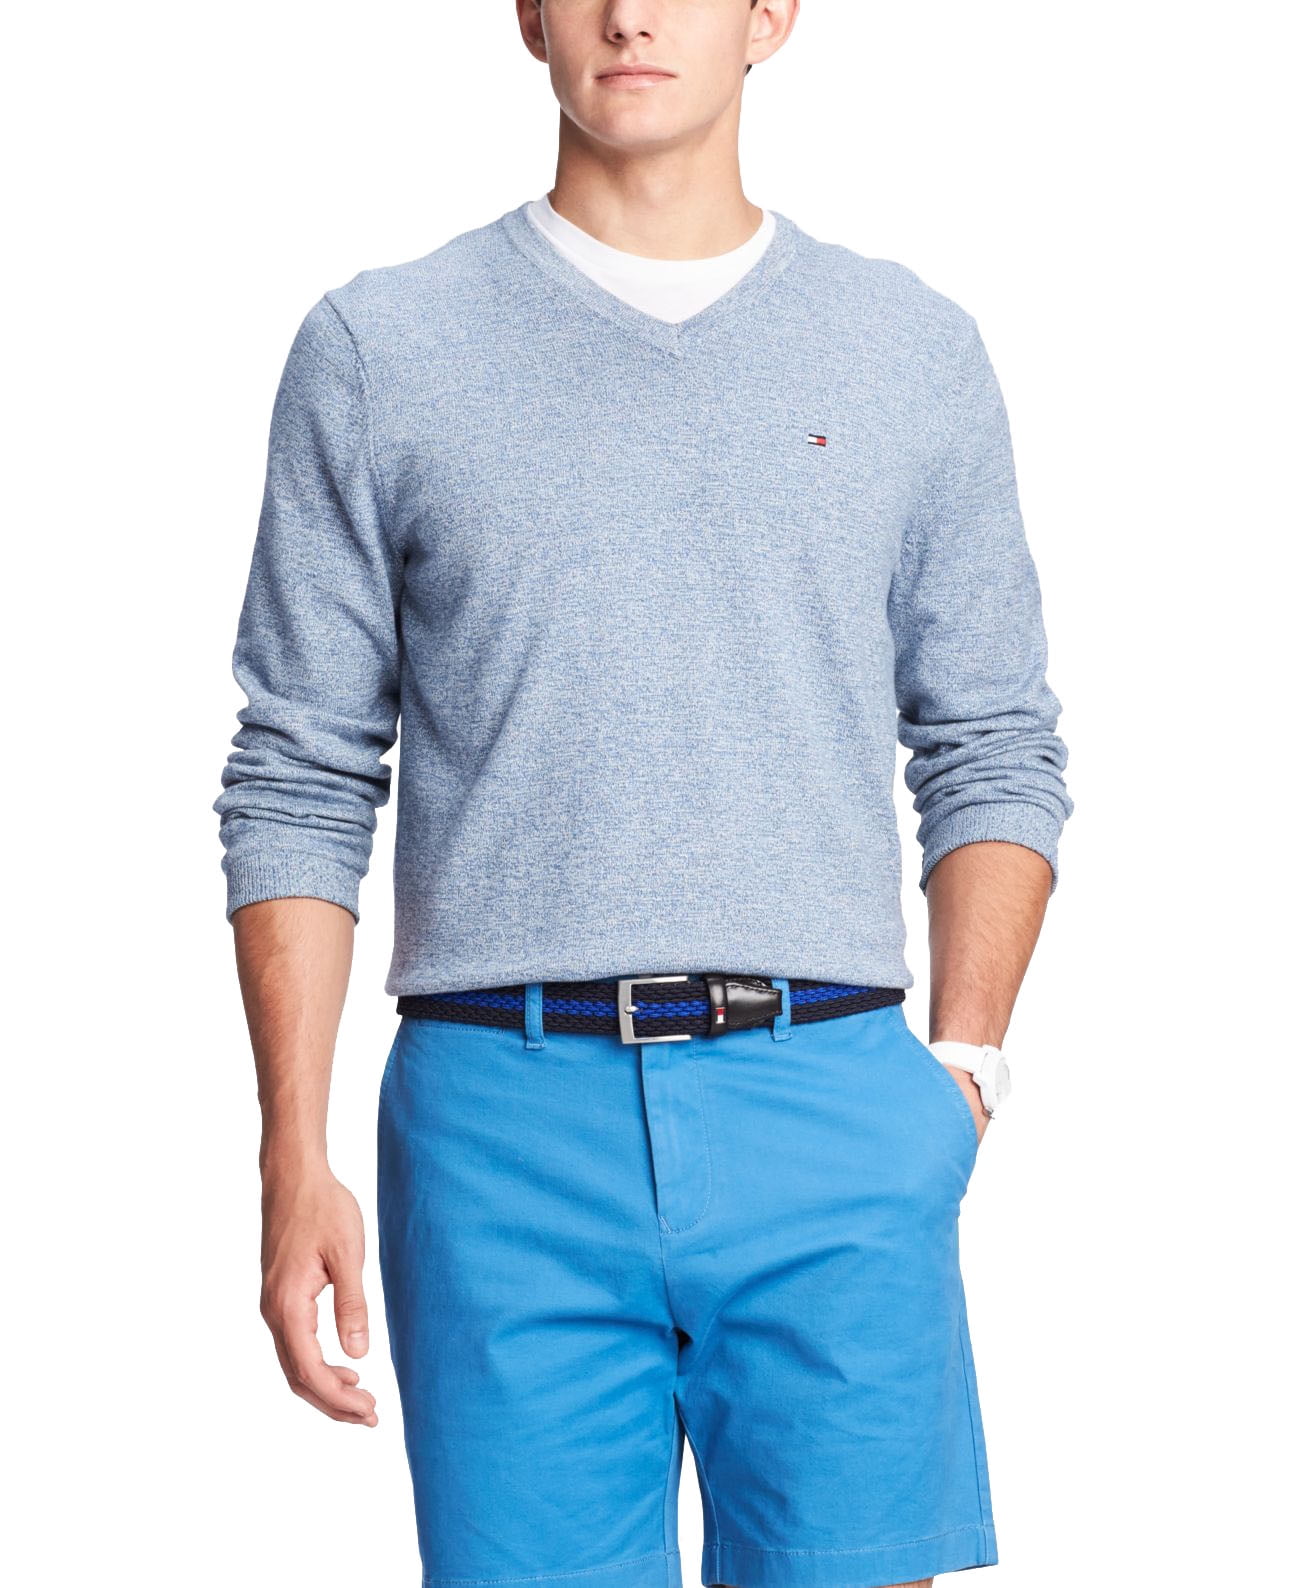 Tommy Hilfiger Mens Solid V-neck Sweater (Blue, XS) - Walmart.com